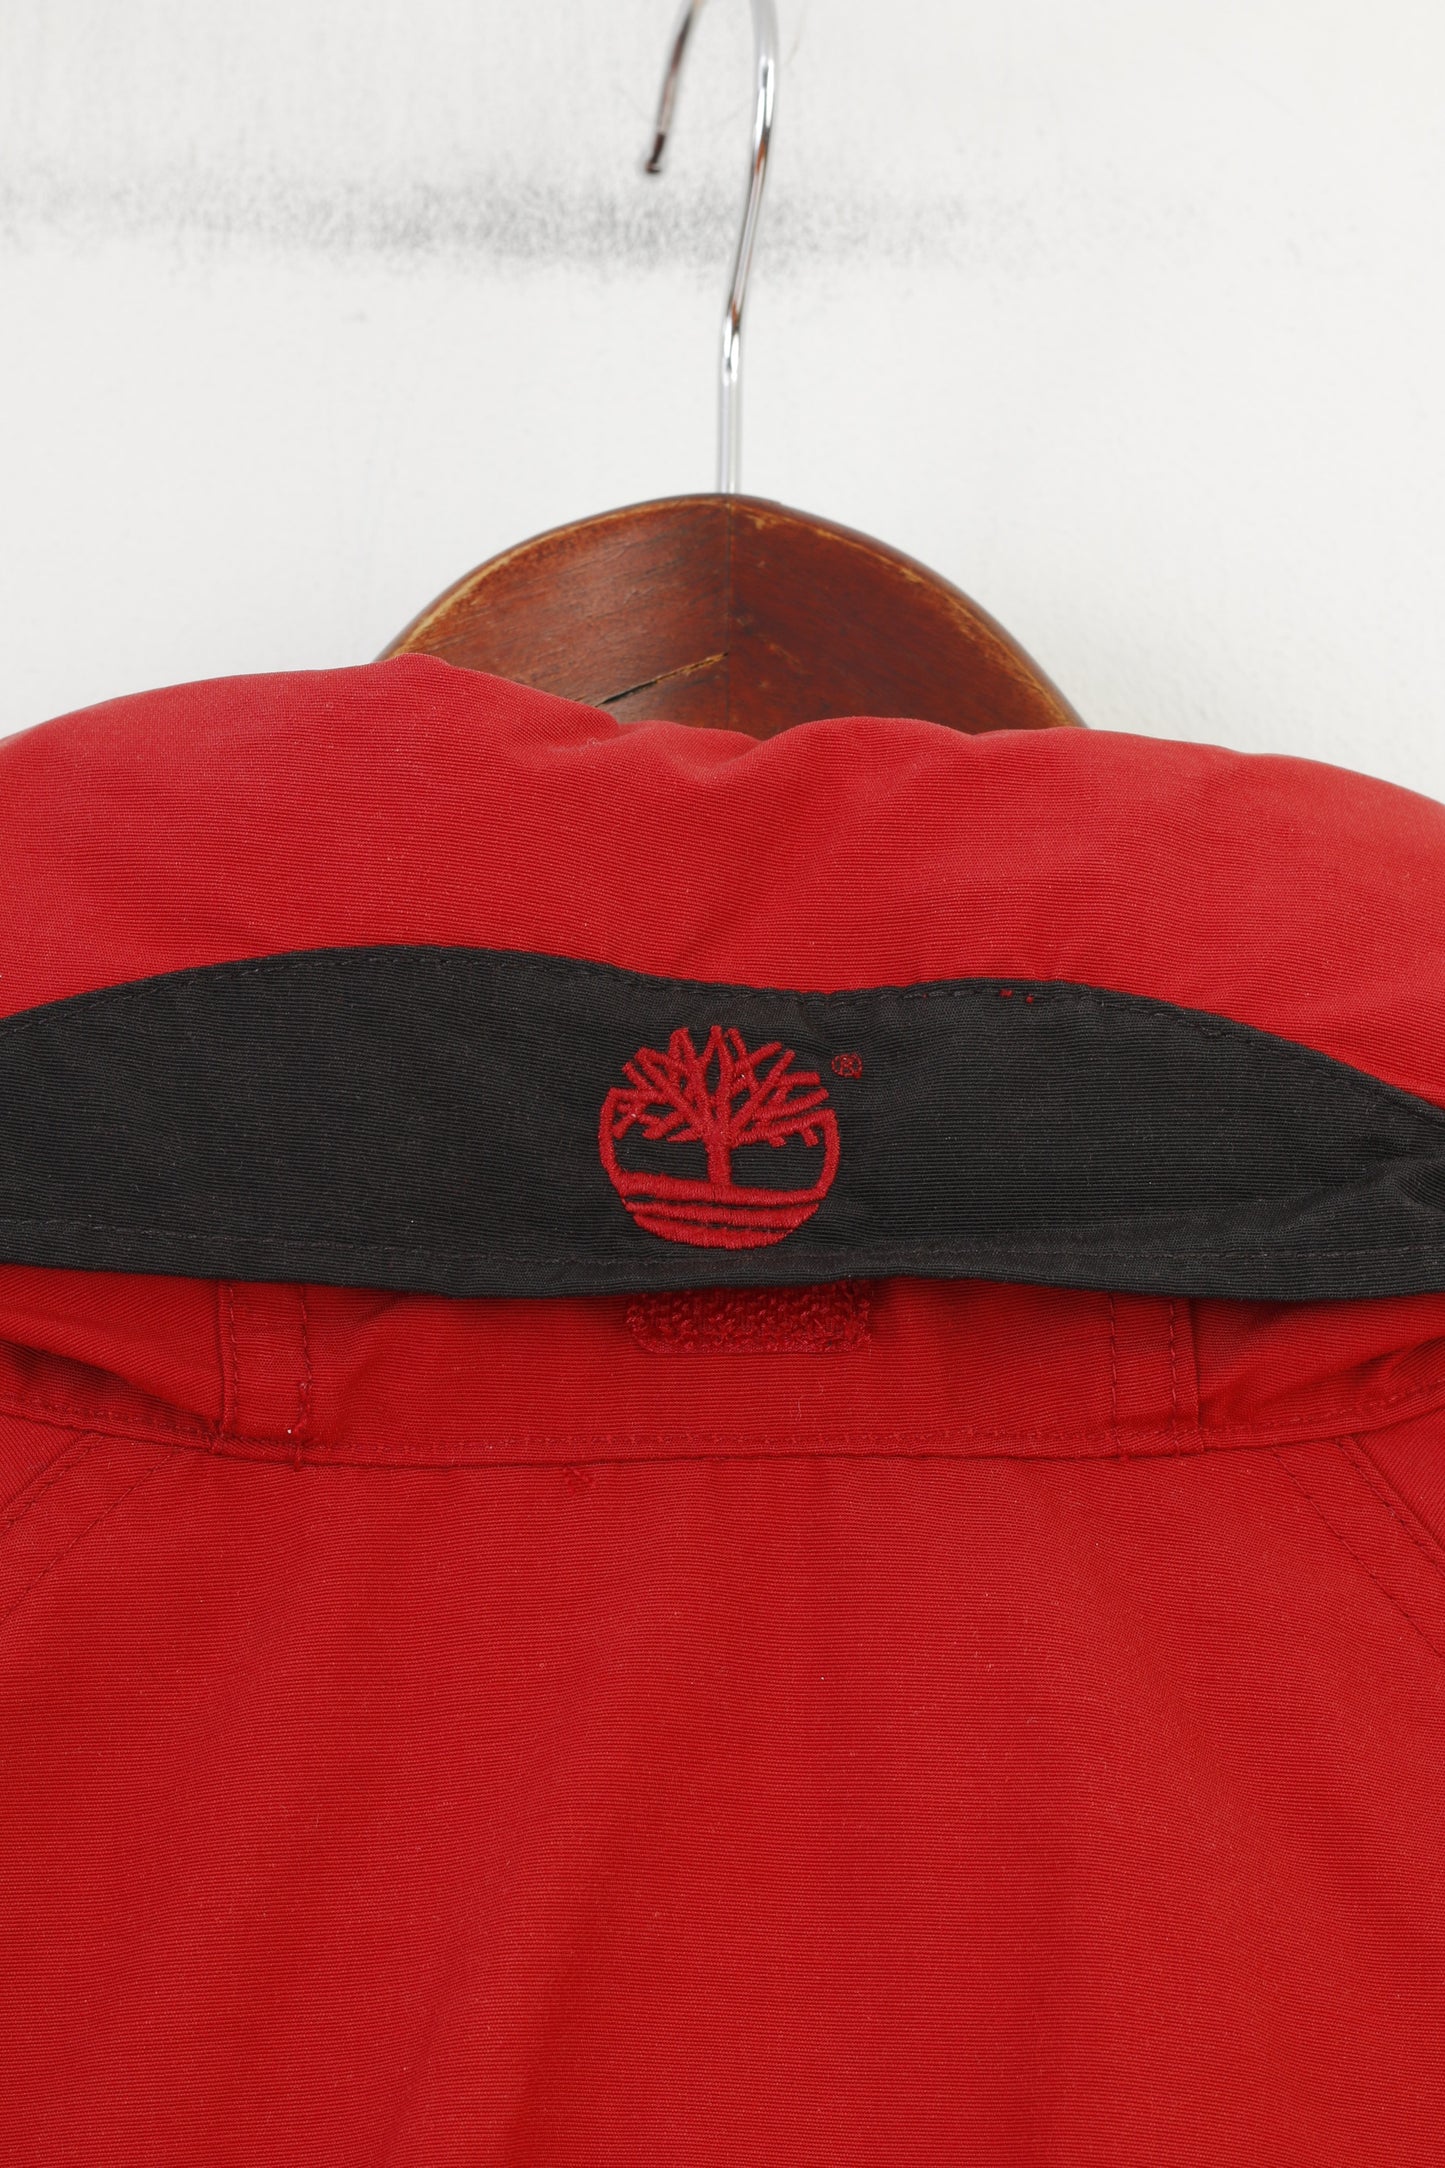 Timberland Hommes L Veste Rouge Fermeture Éclair Complète Vintage Capuche Outwear Coton Nylon Poches Top